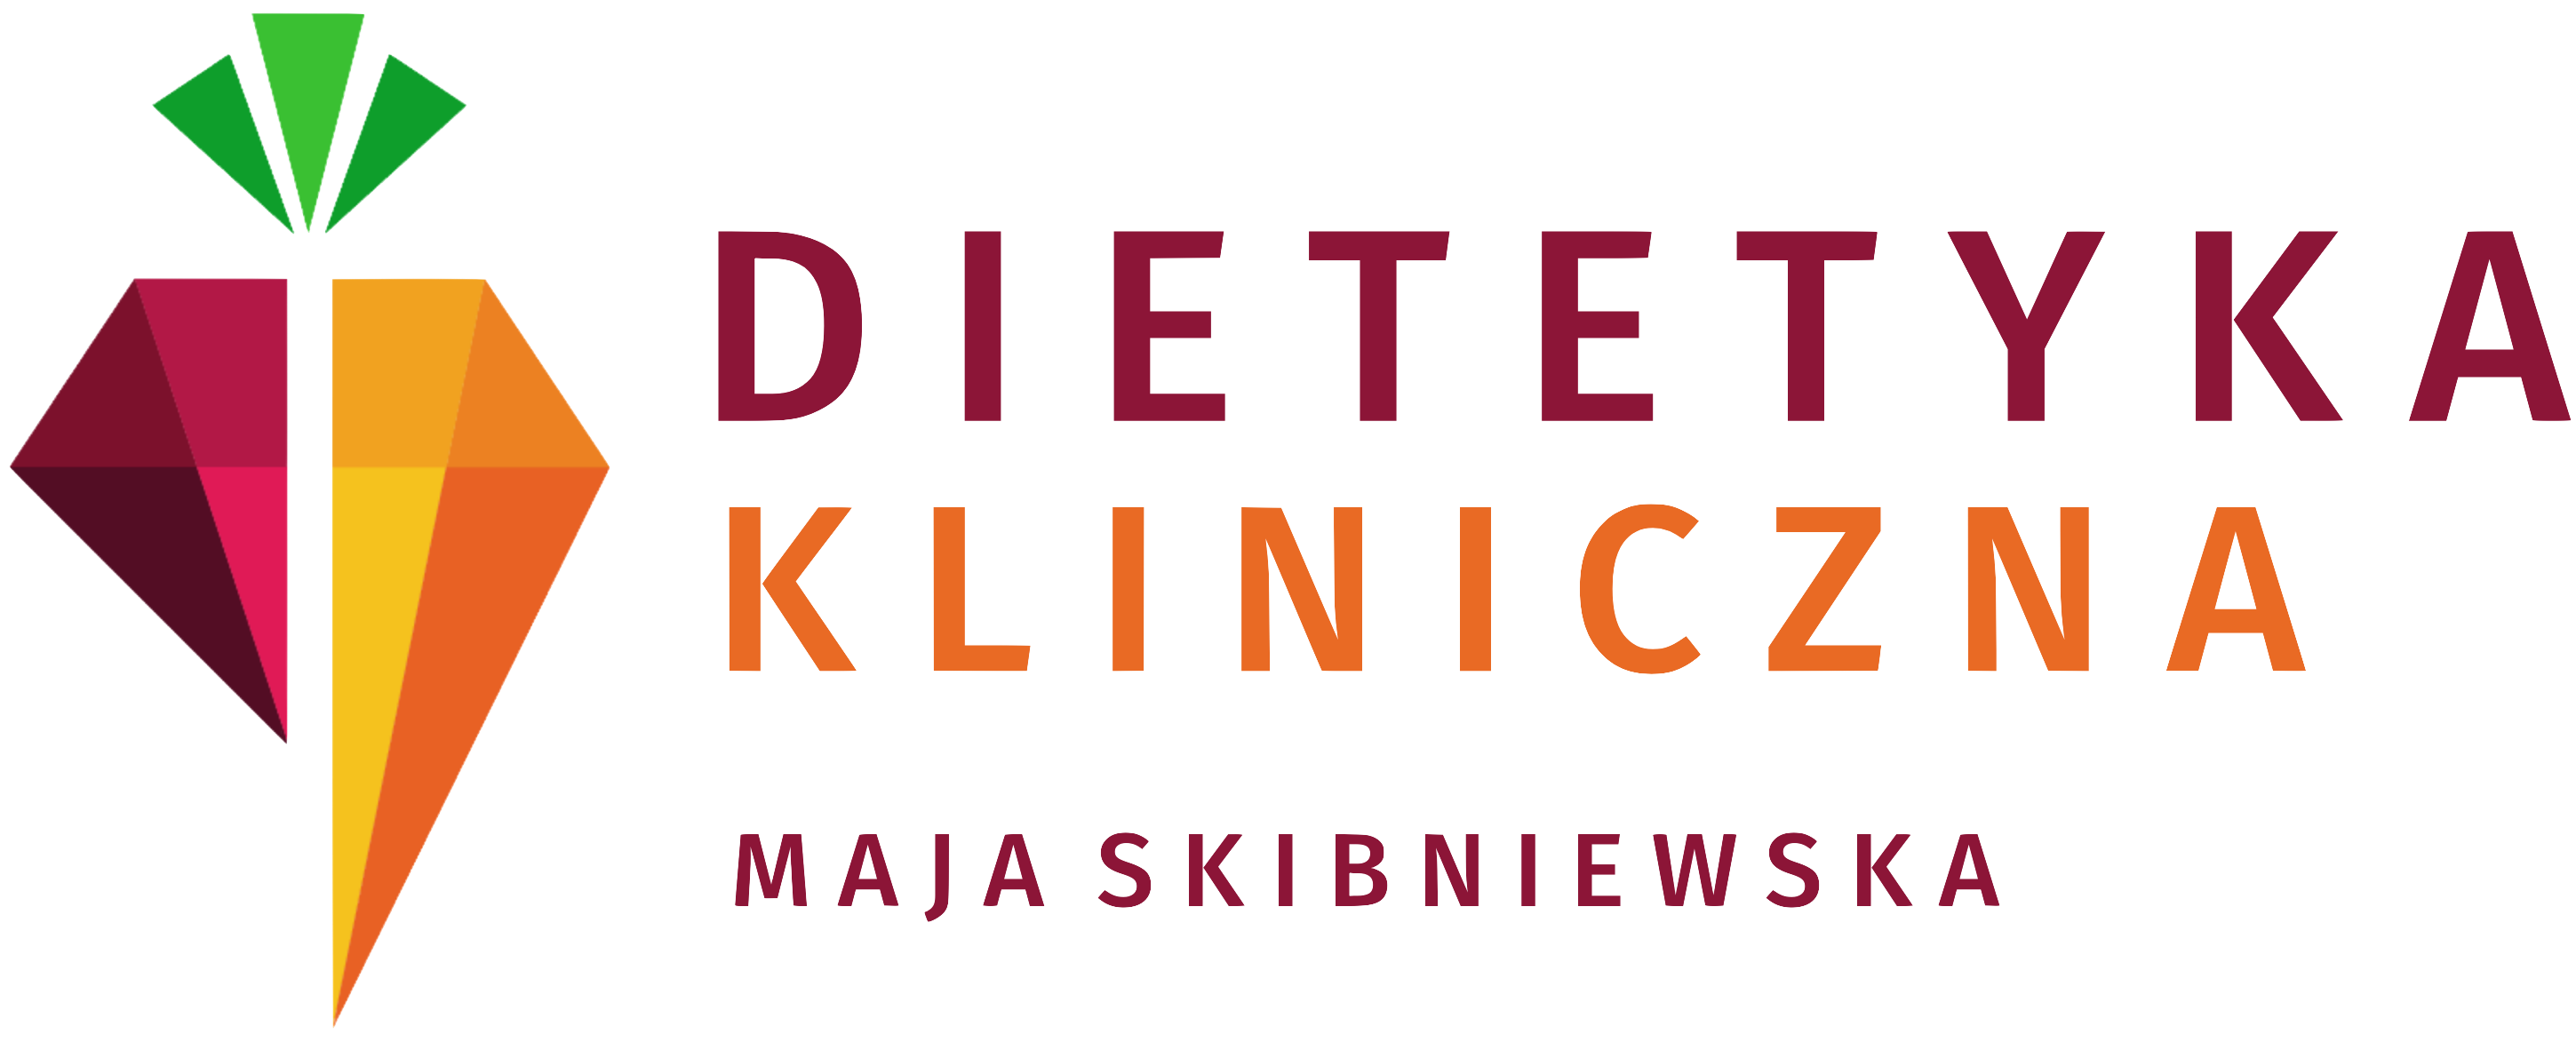 Dietetyka Kliniczna Maja Skibniewska